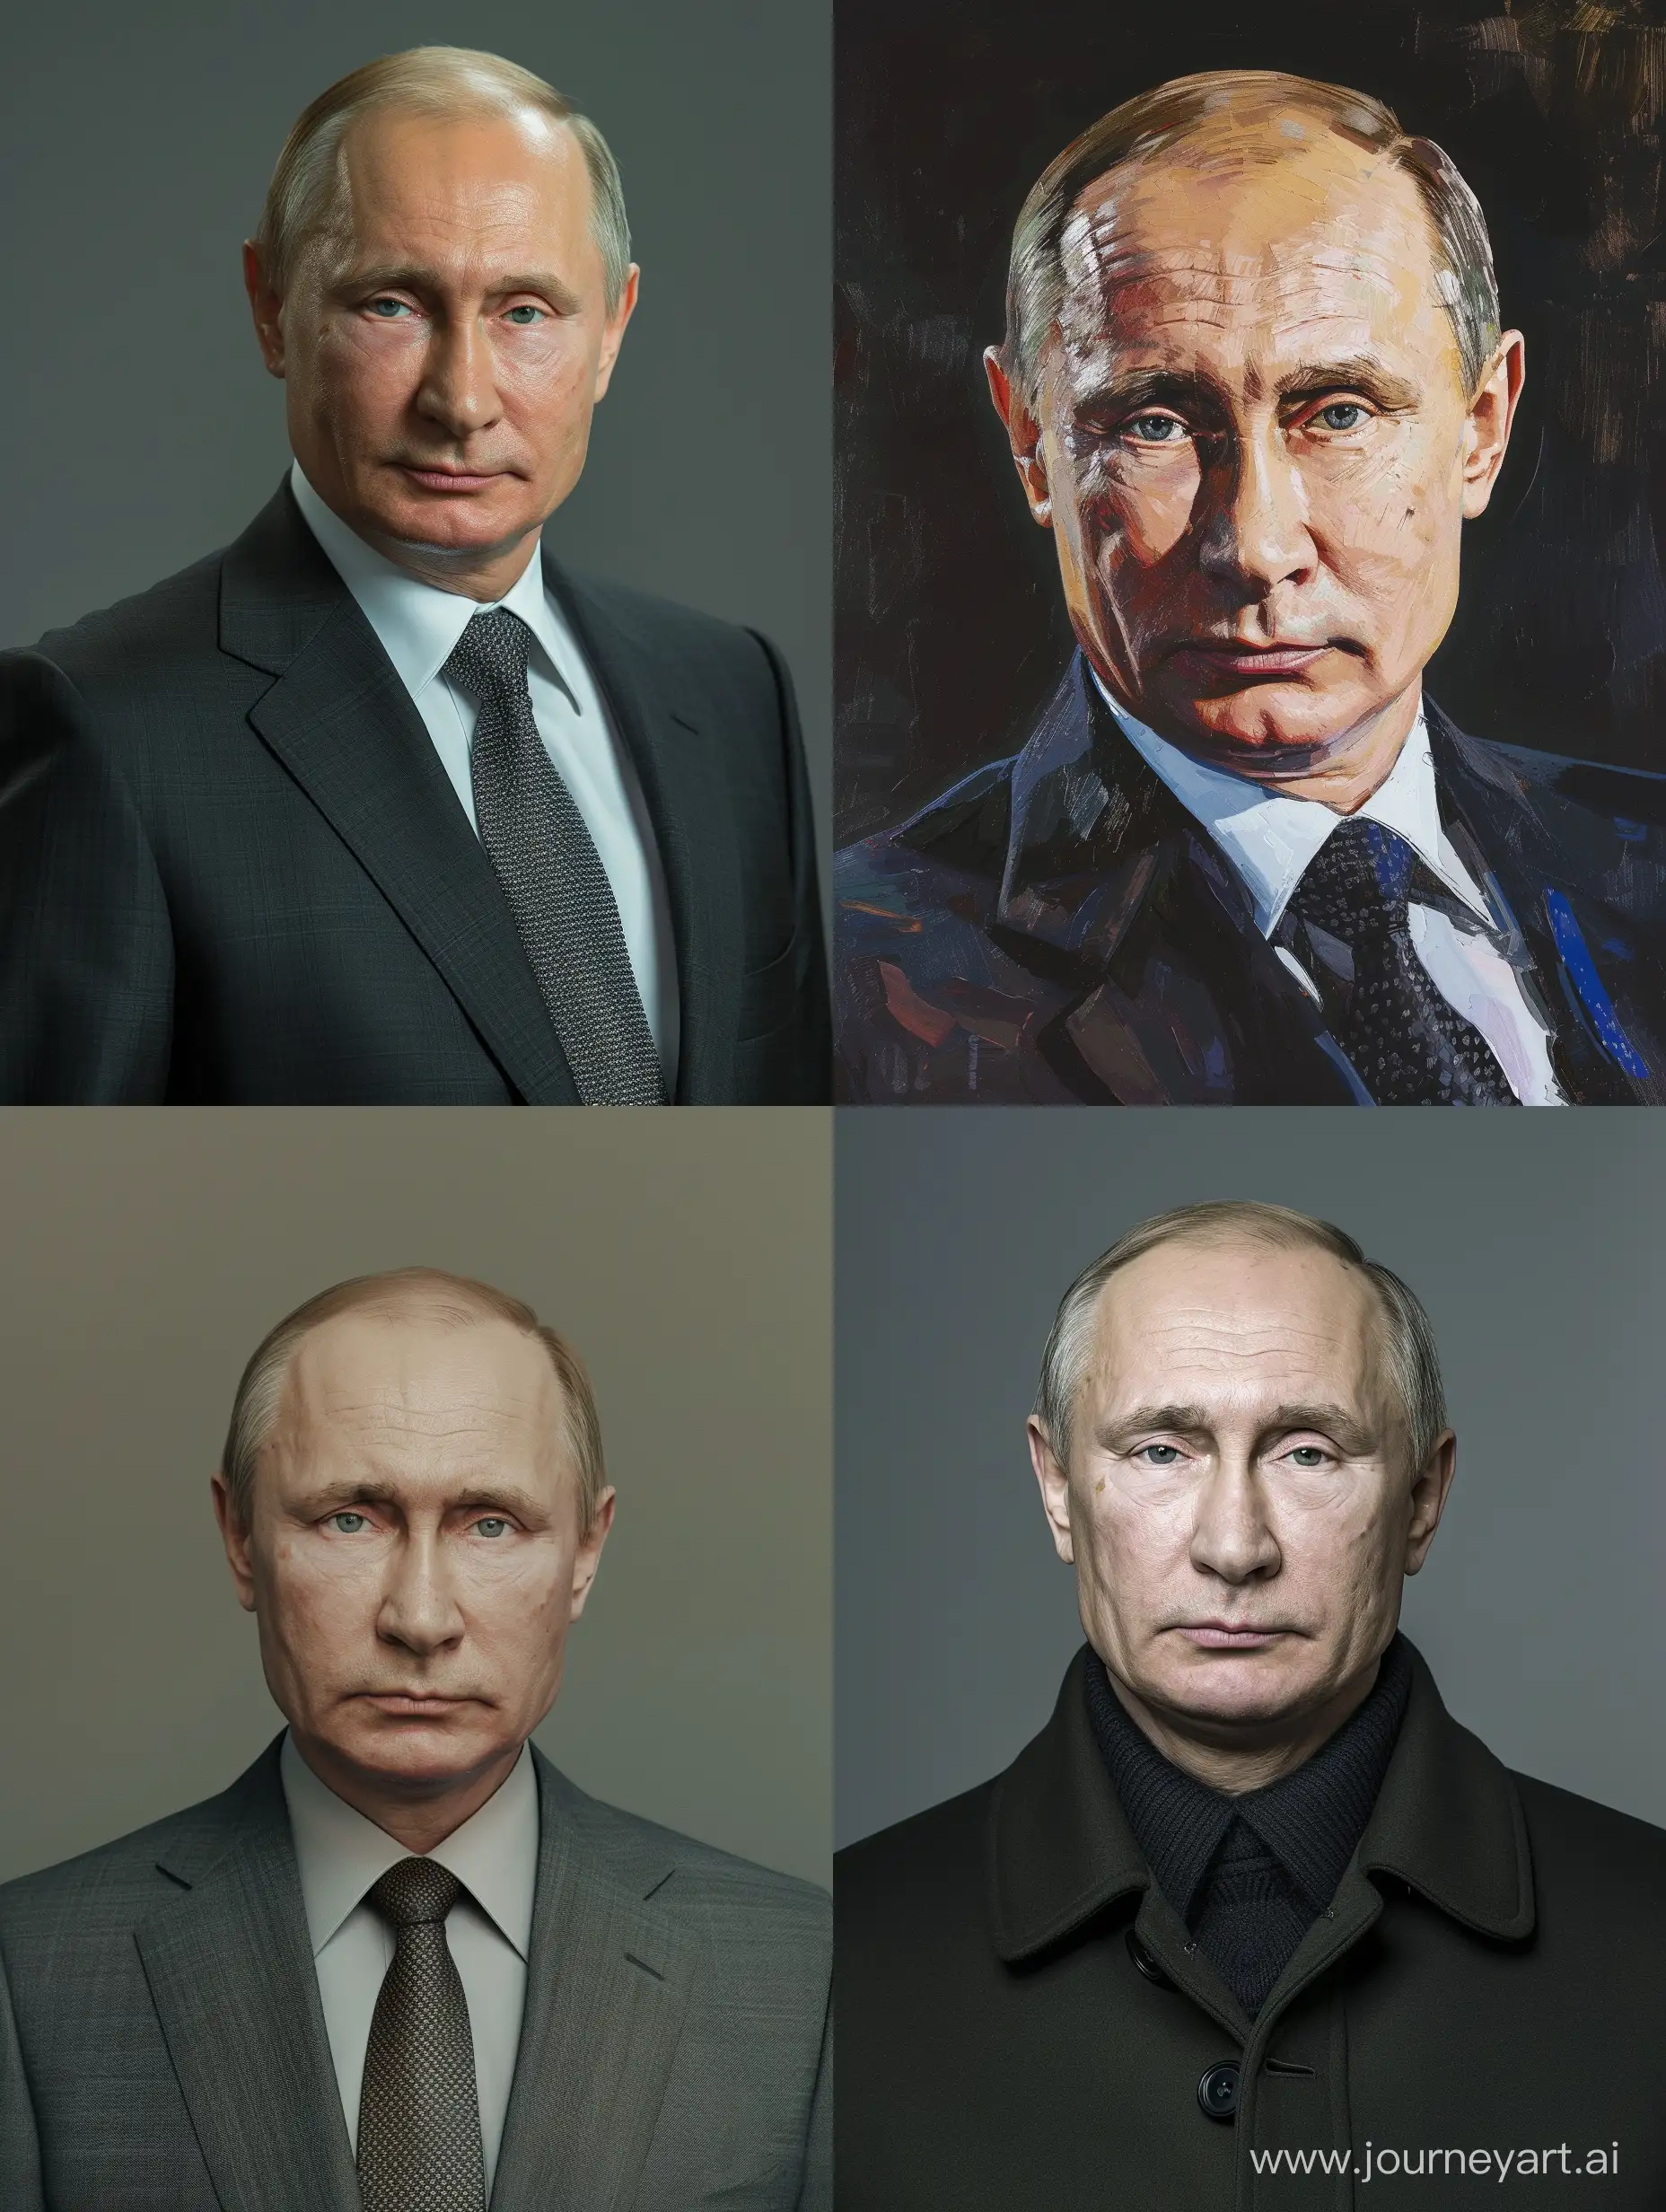 Vladimir-Putins-Commanding-Portrait-in-Regal-Attire